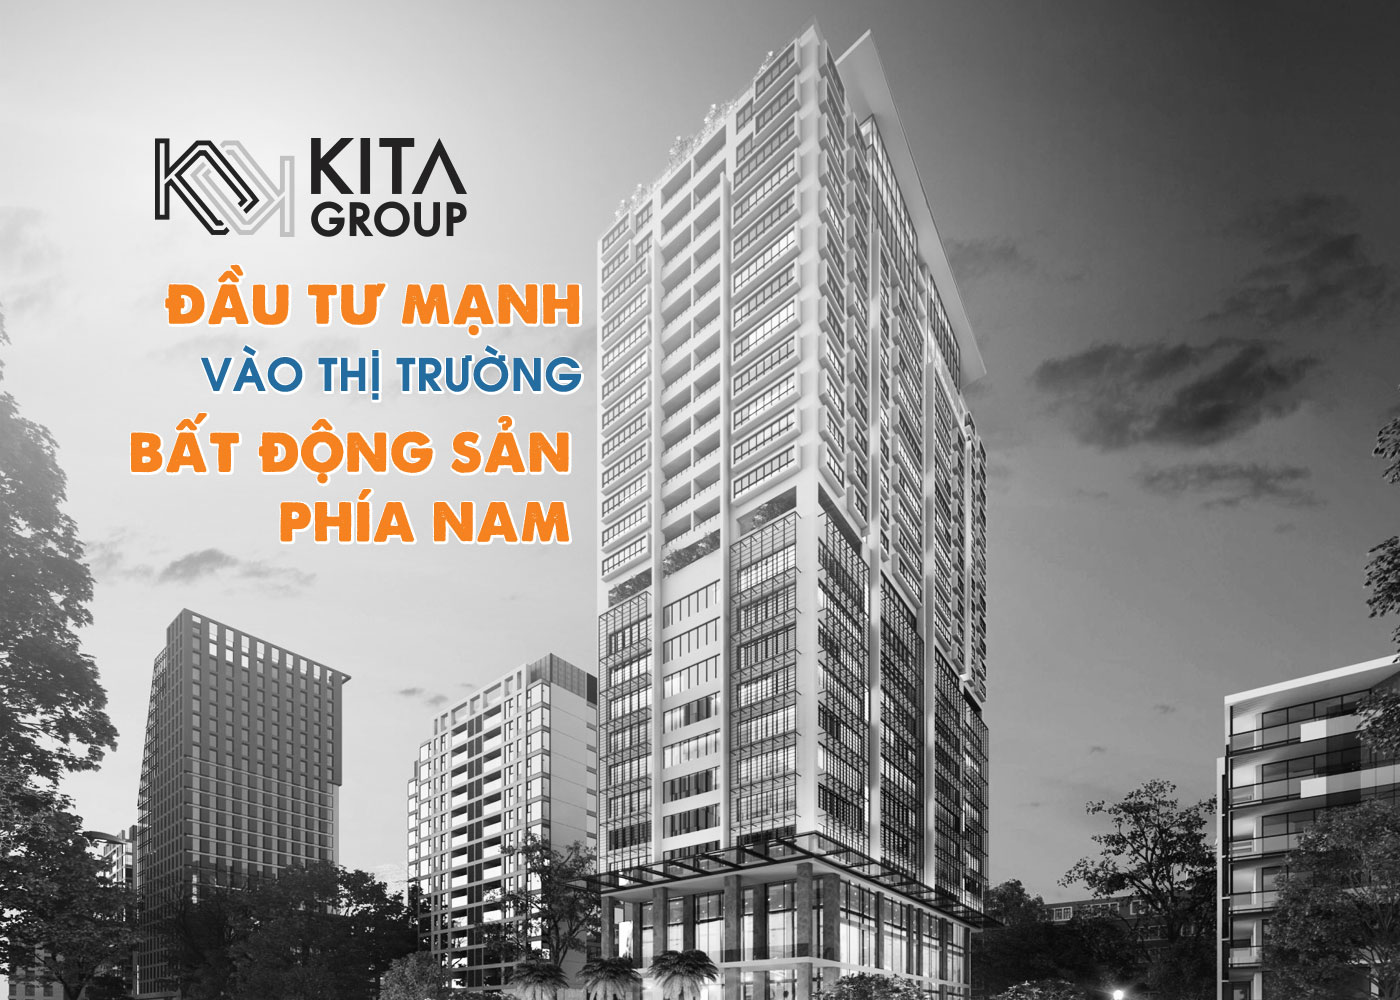 KiTa Group đầu tư mạnh vào thị trường bất động sản phía Nam - Ảnh 1